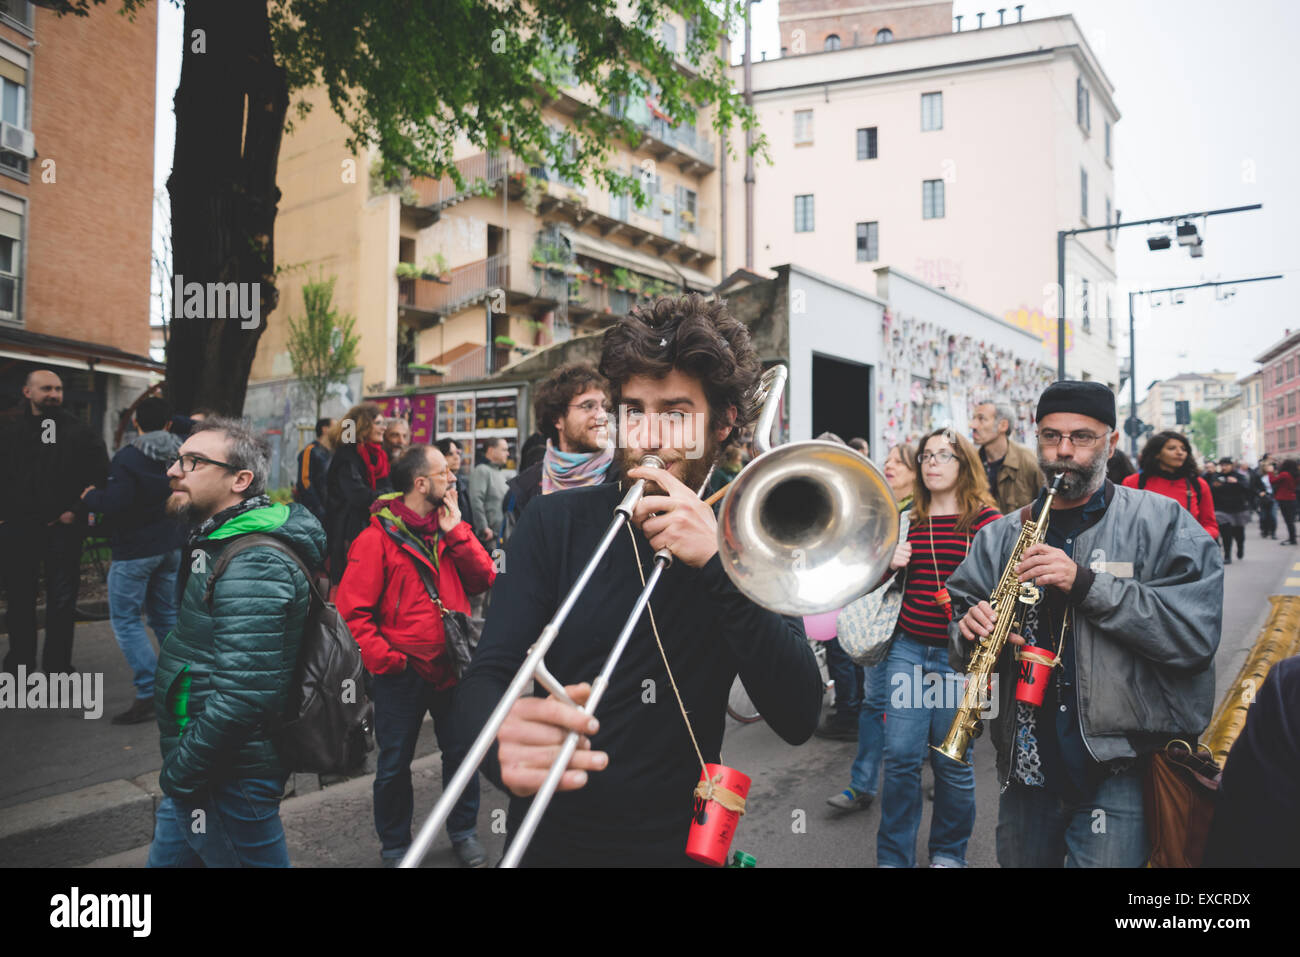 Milano, Italia - 1 maggio: musicisti non manifesto expo che si terrà a Milano il 1 maggio 2015. musicisti protesta contro l'Expo 2015 di Milano ha iniziato quel giorno a Rho - Pero district Foto Stock